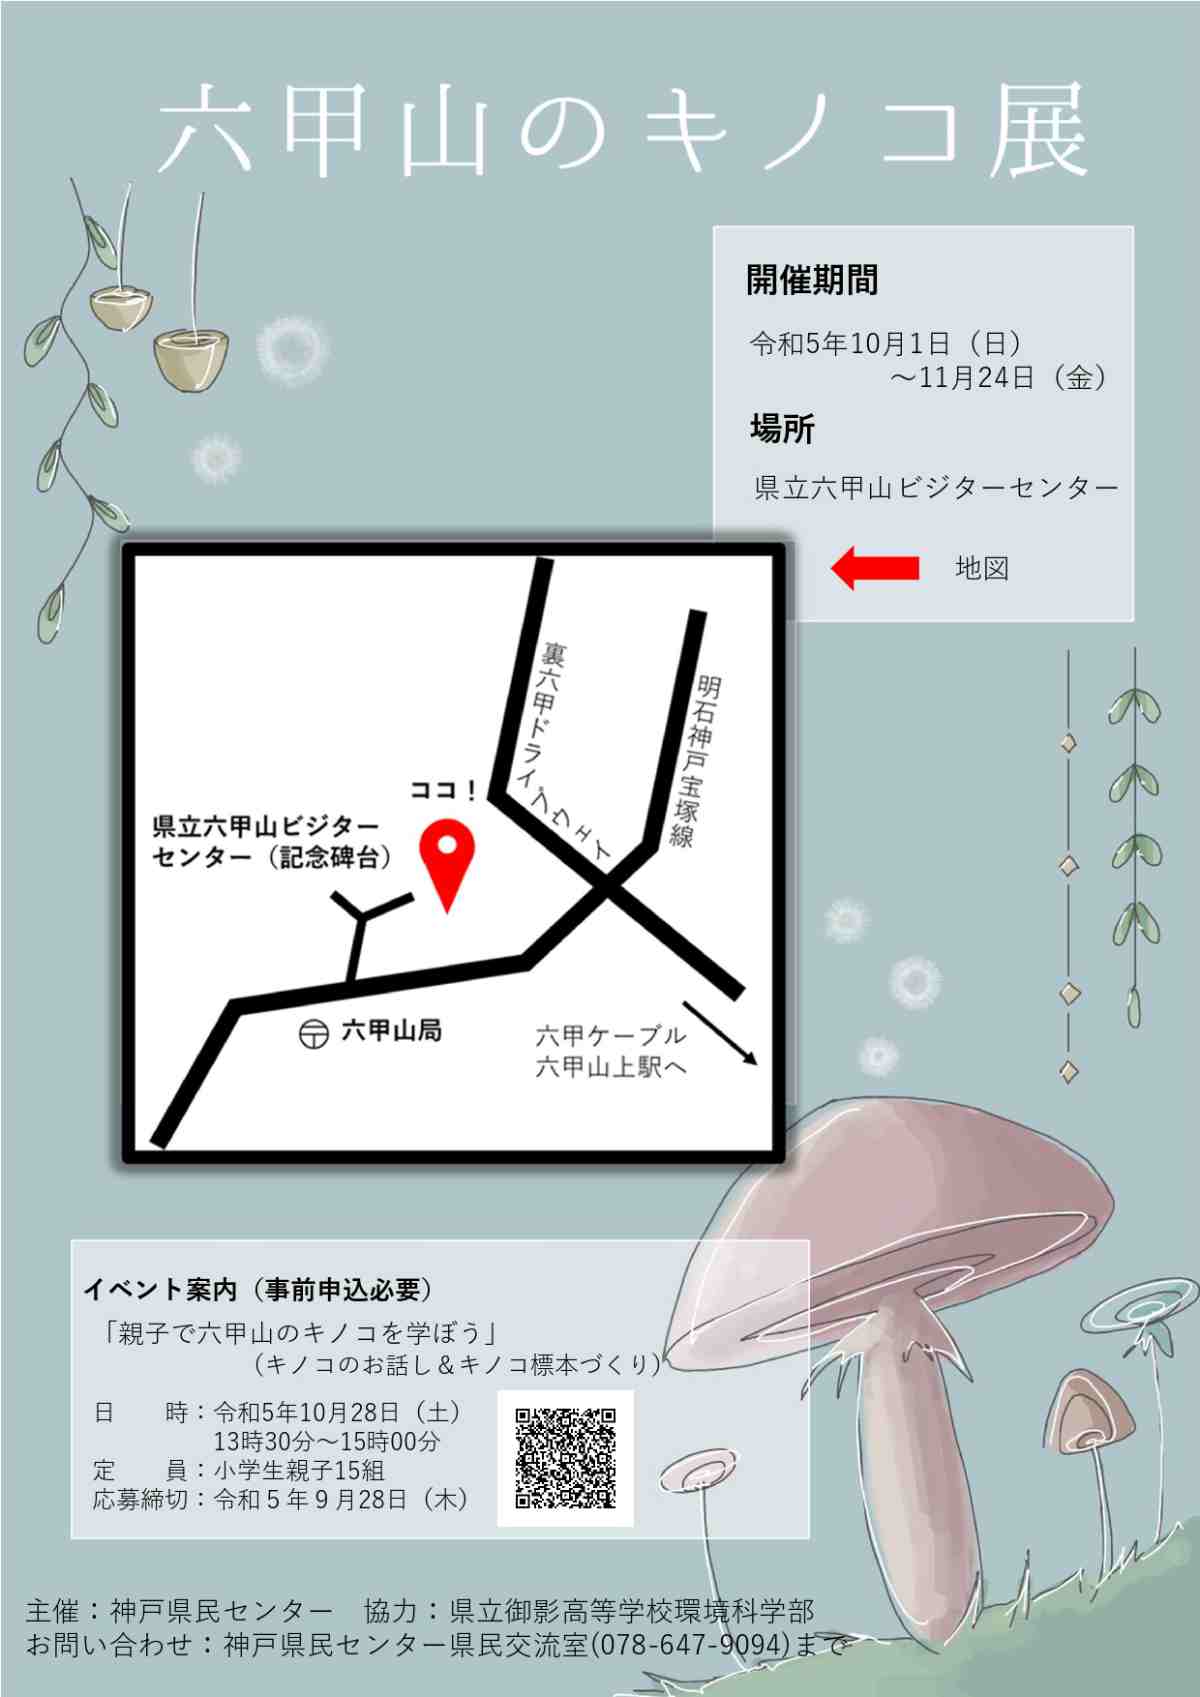 県立六甲山ビジターセンターで企画展「六甲山のキノコ展」開催　神戸市 [画像]